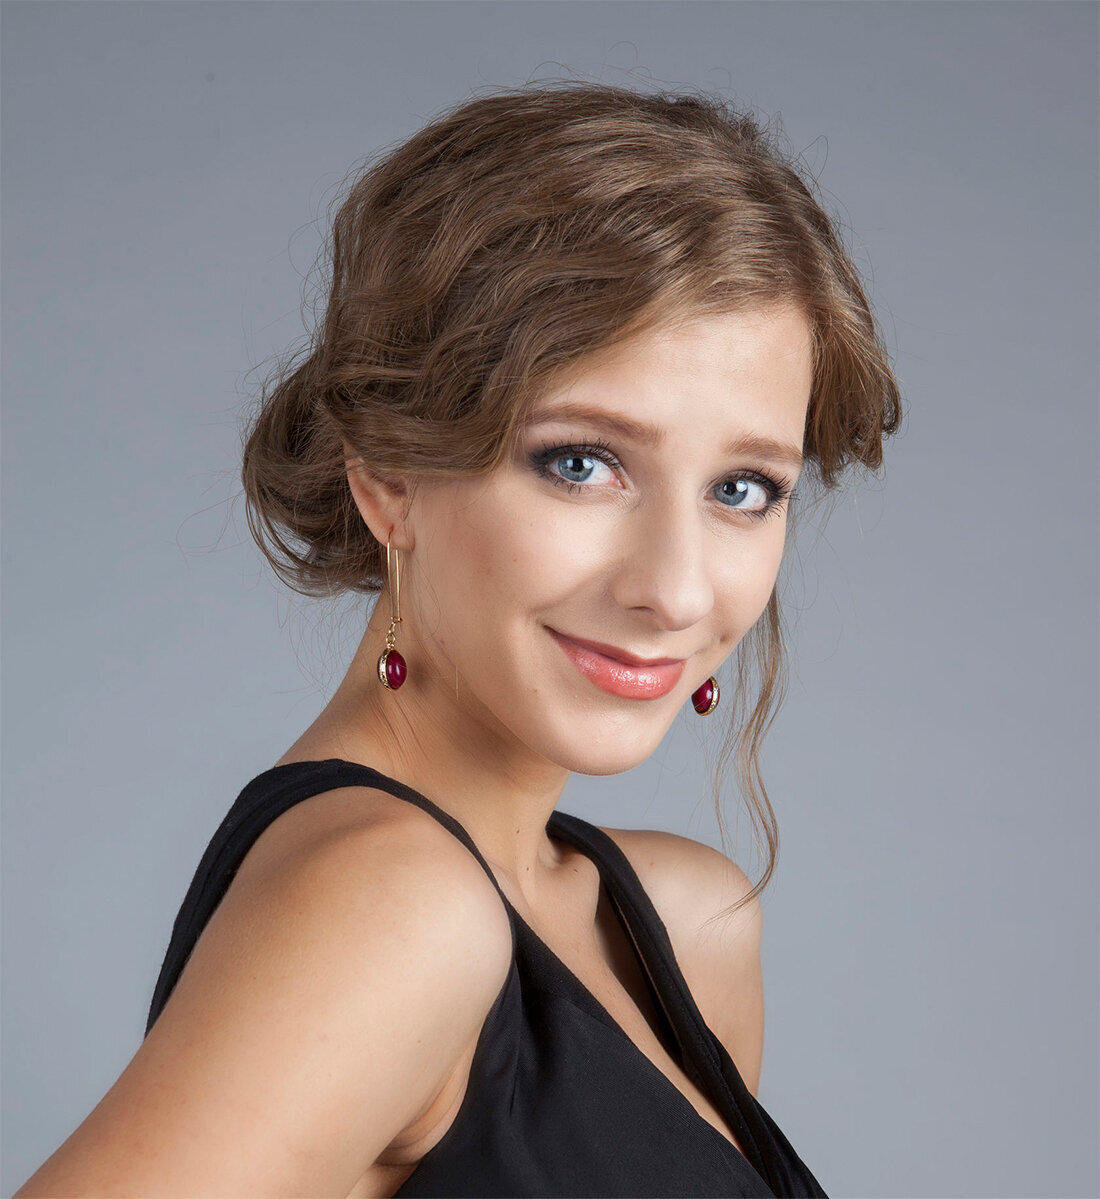 телеведущая, актриса театра и кино, певица (26 лет) Источник для фото - Яндекс